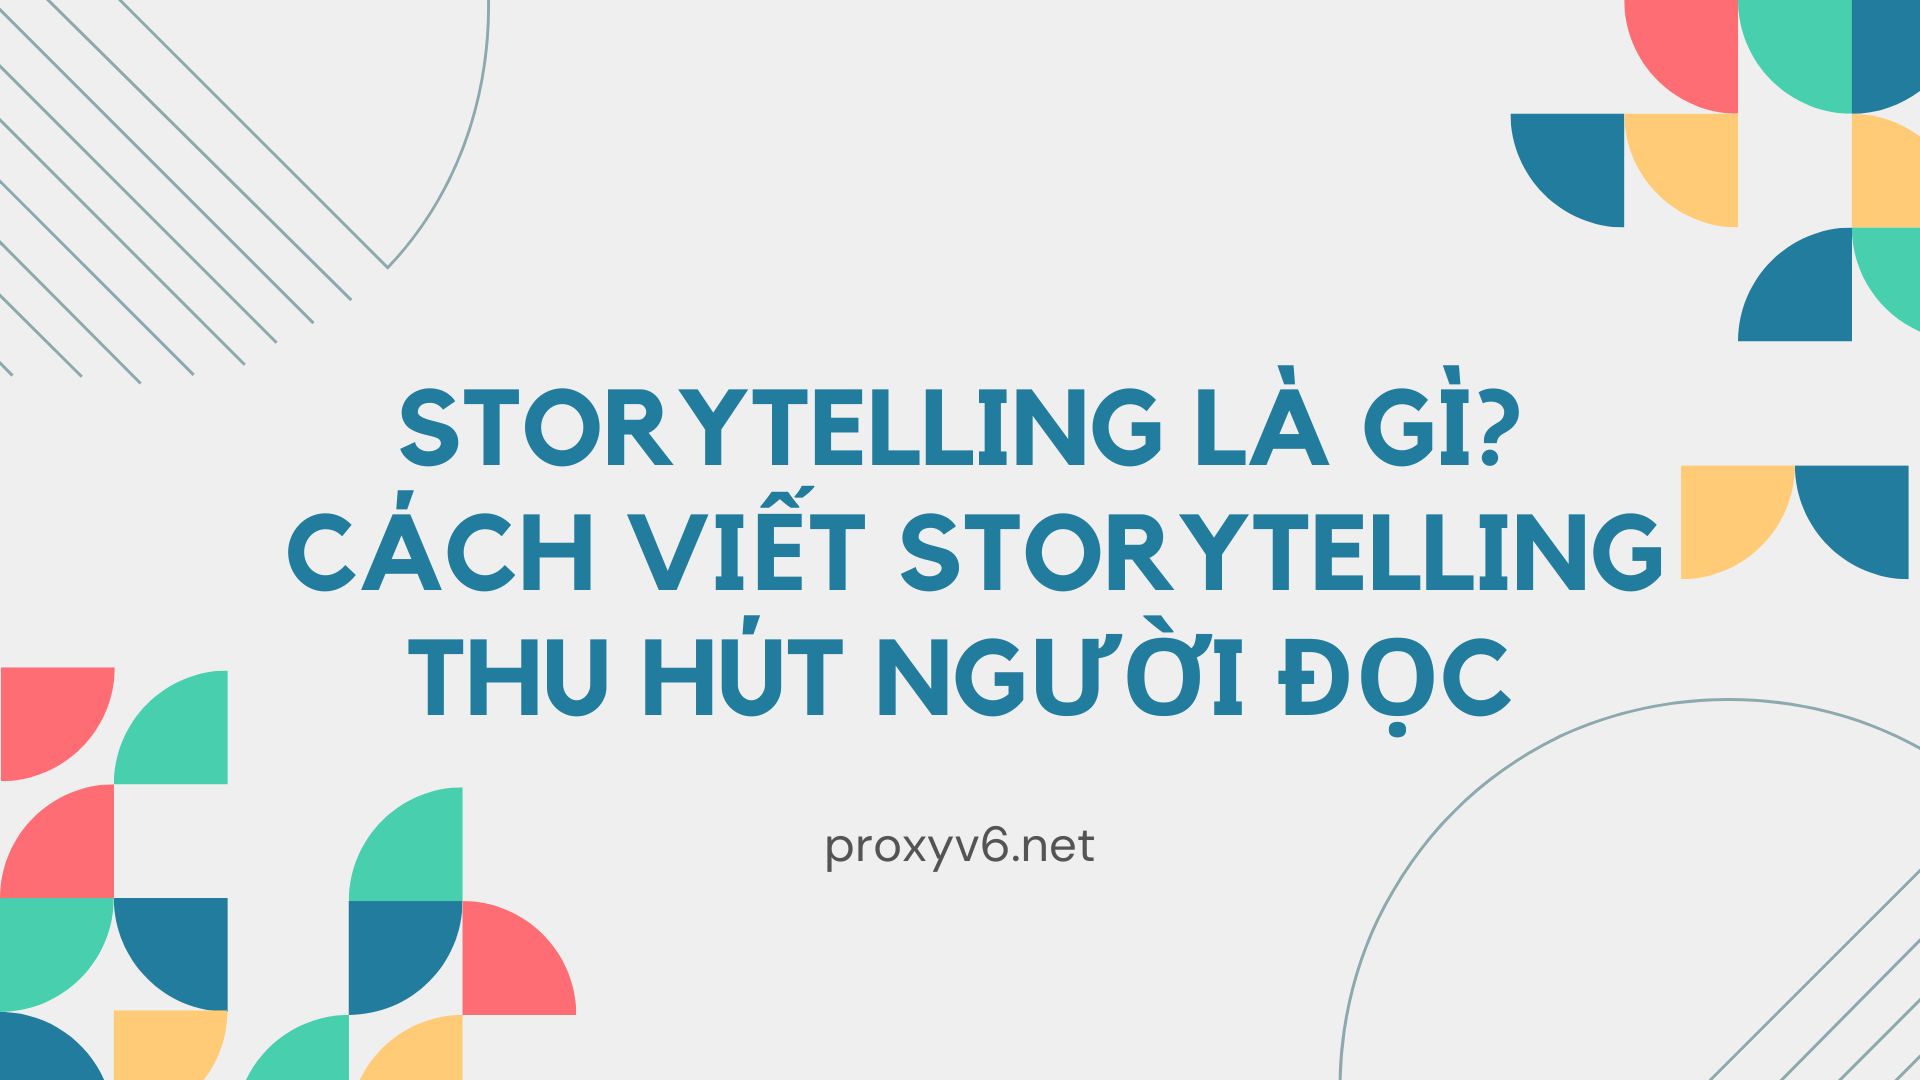 Storytelling là gì? Cách viết storytelling thu hút người đọc